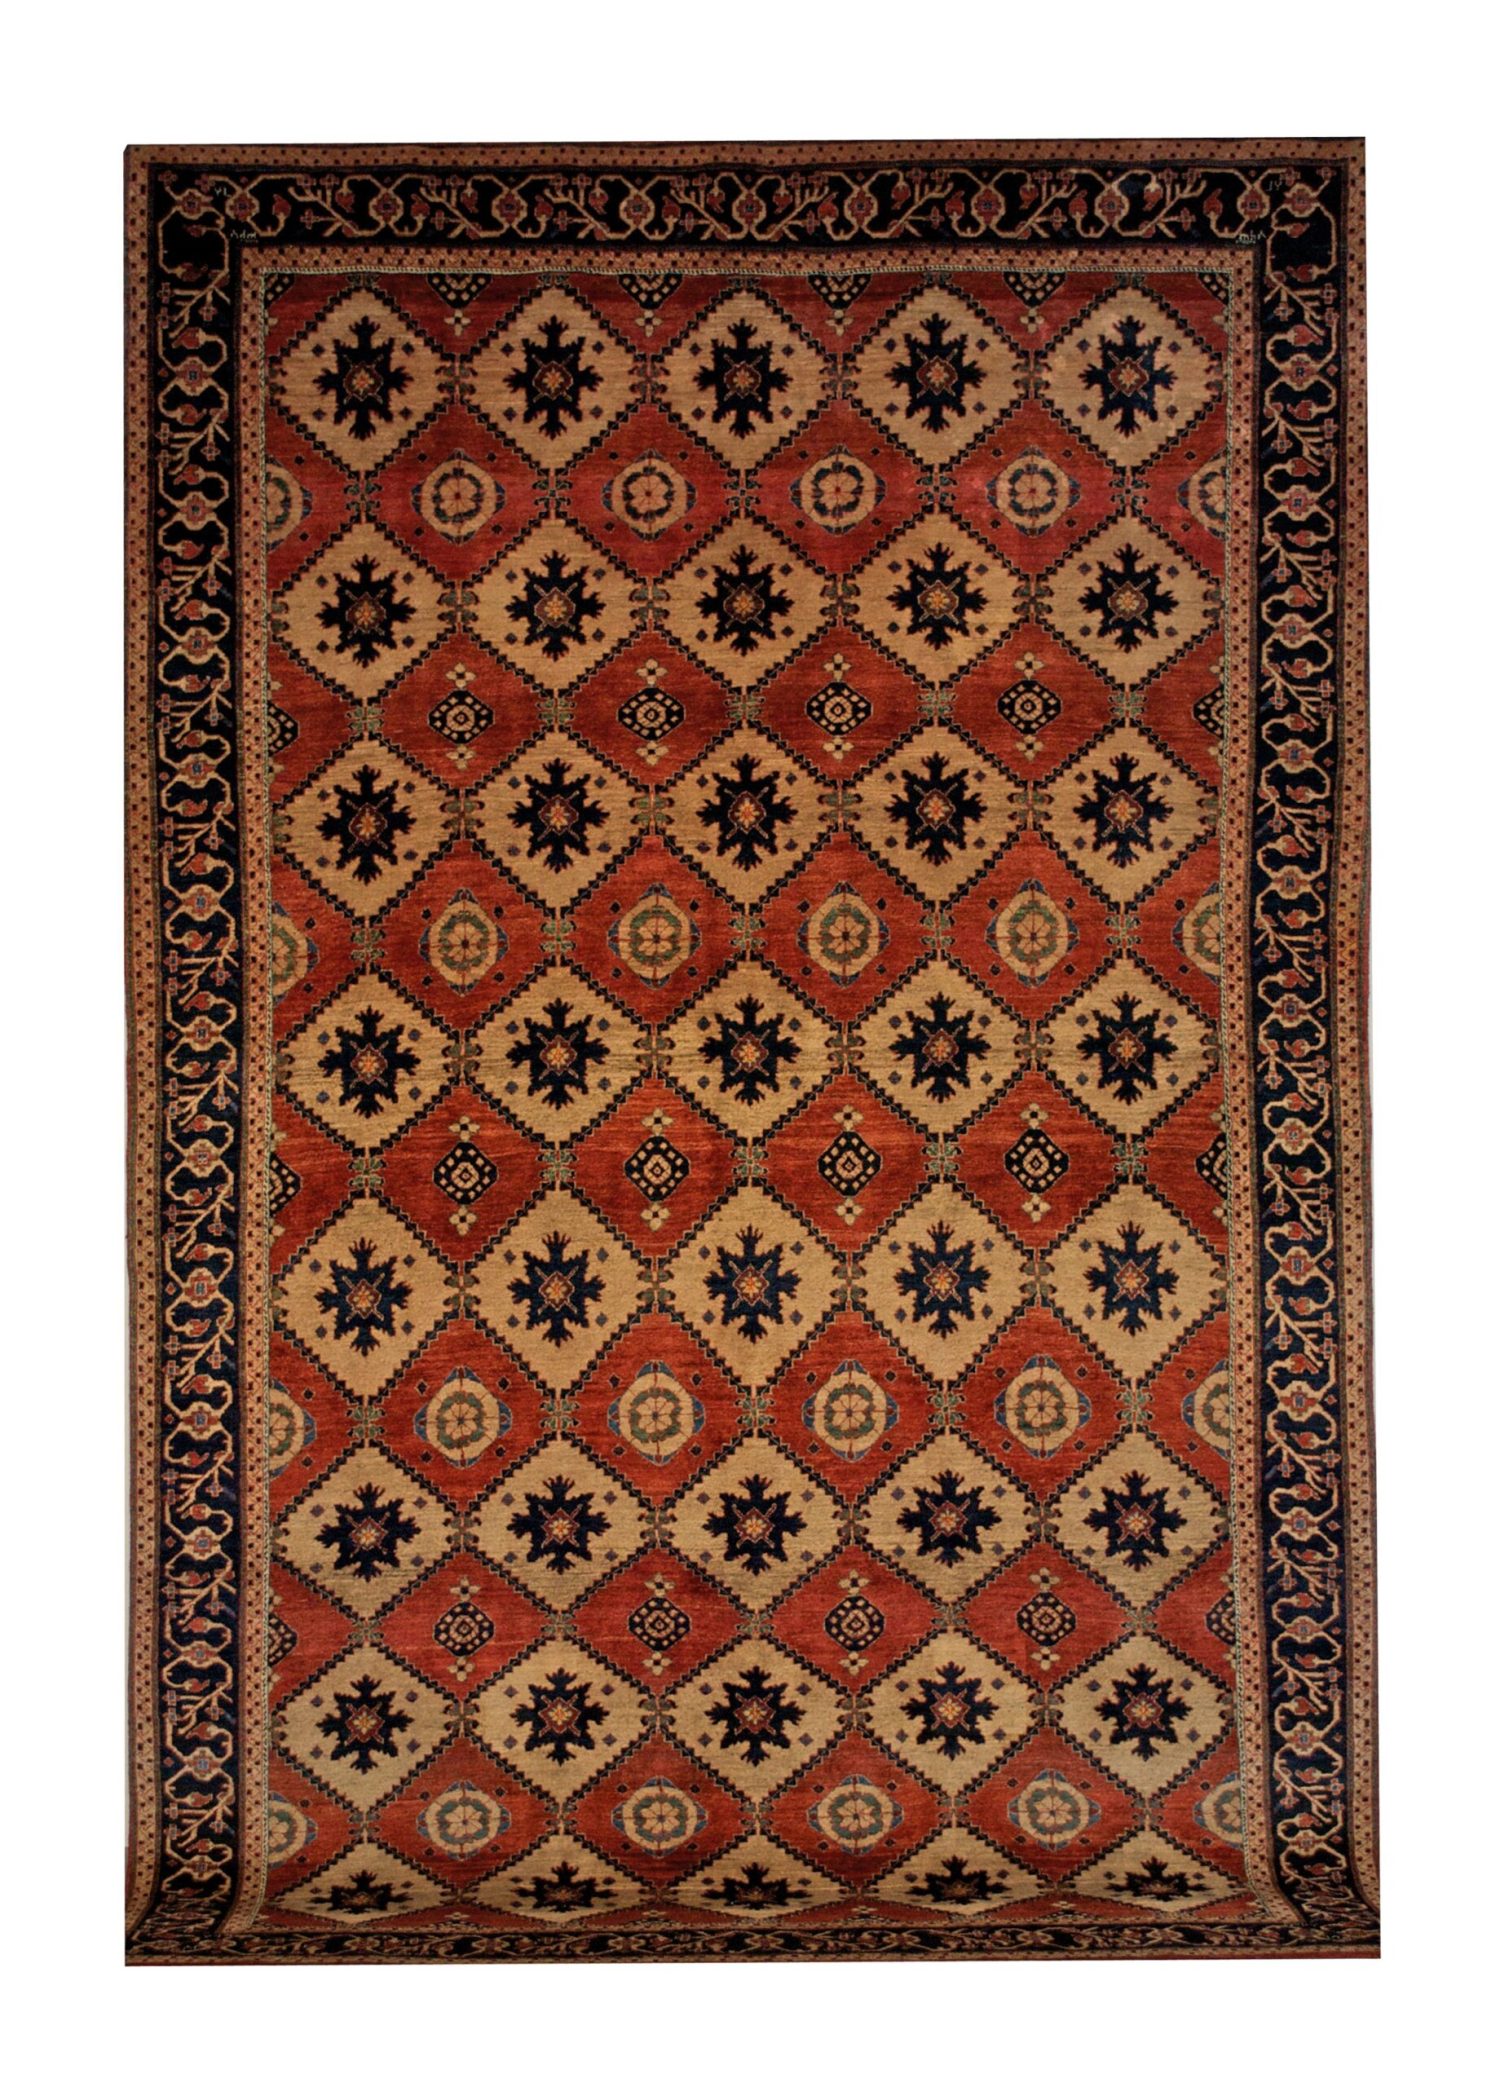 Persian Gabbeh 7' 1" x 11' Wool Handmade Area Rug - Shabahang Royal Carpet